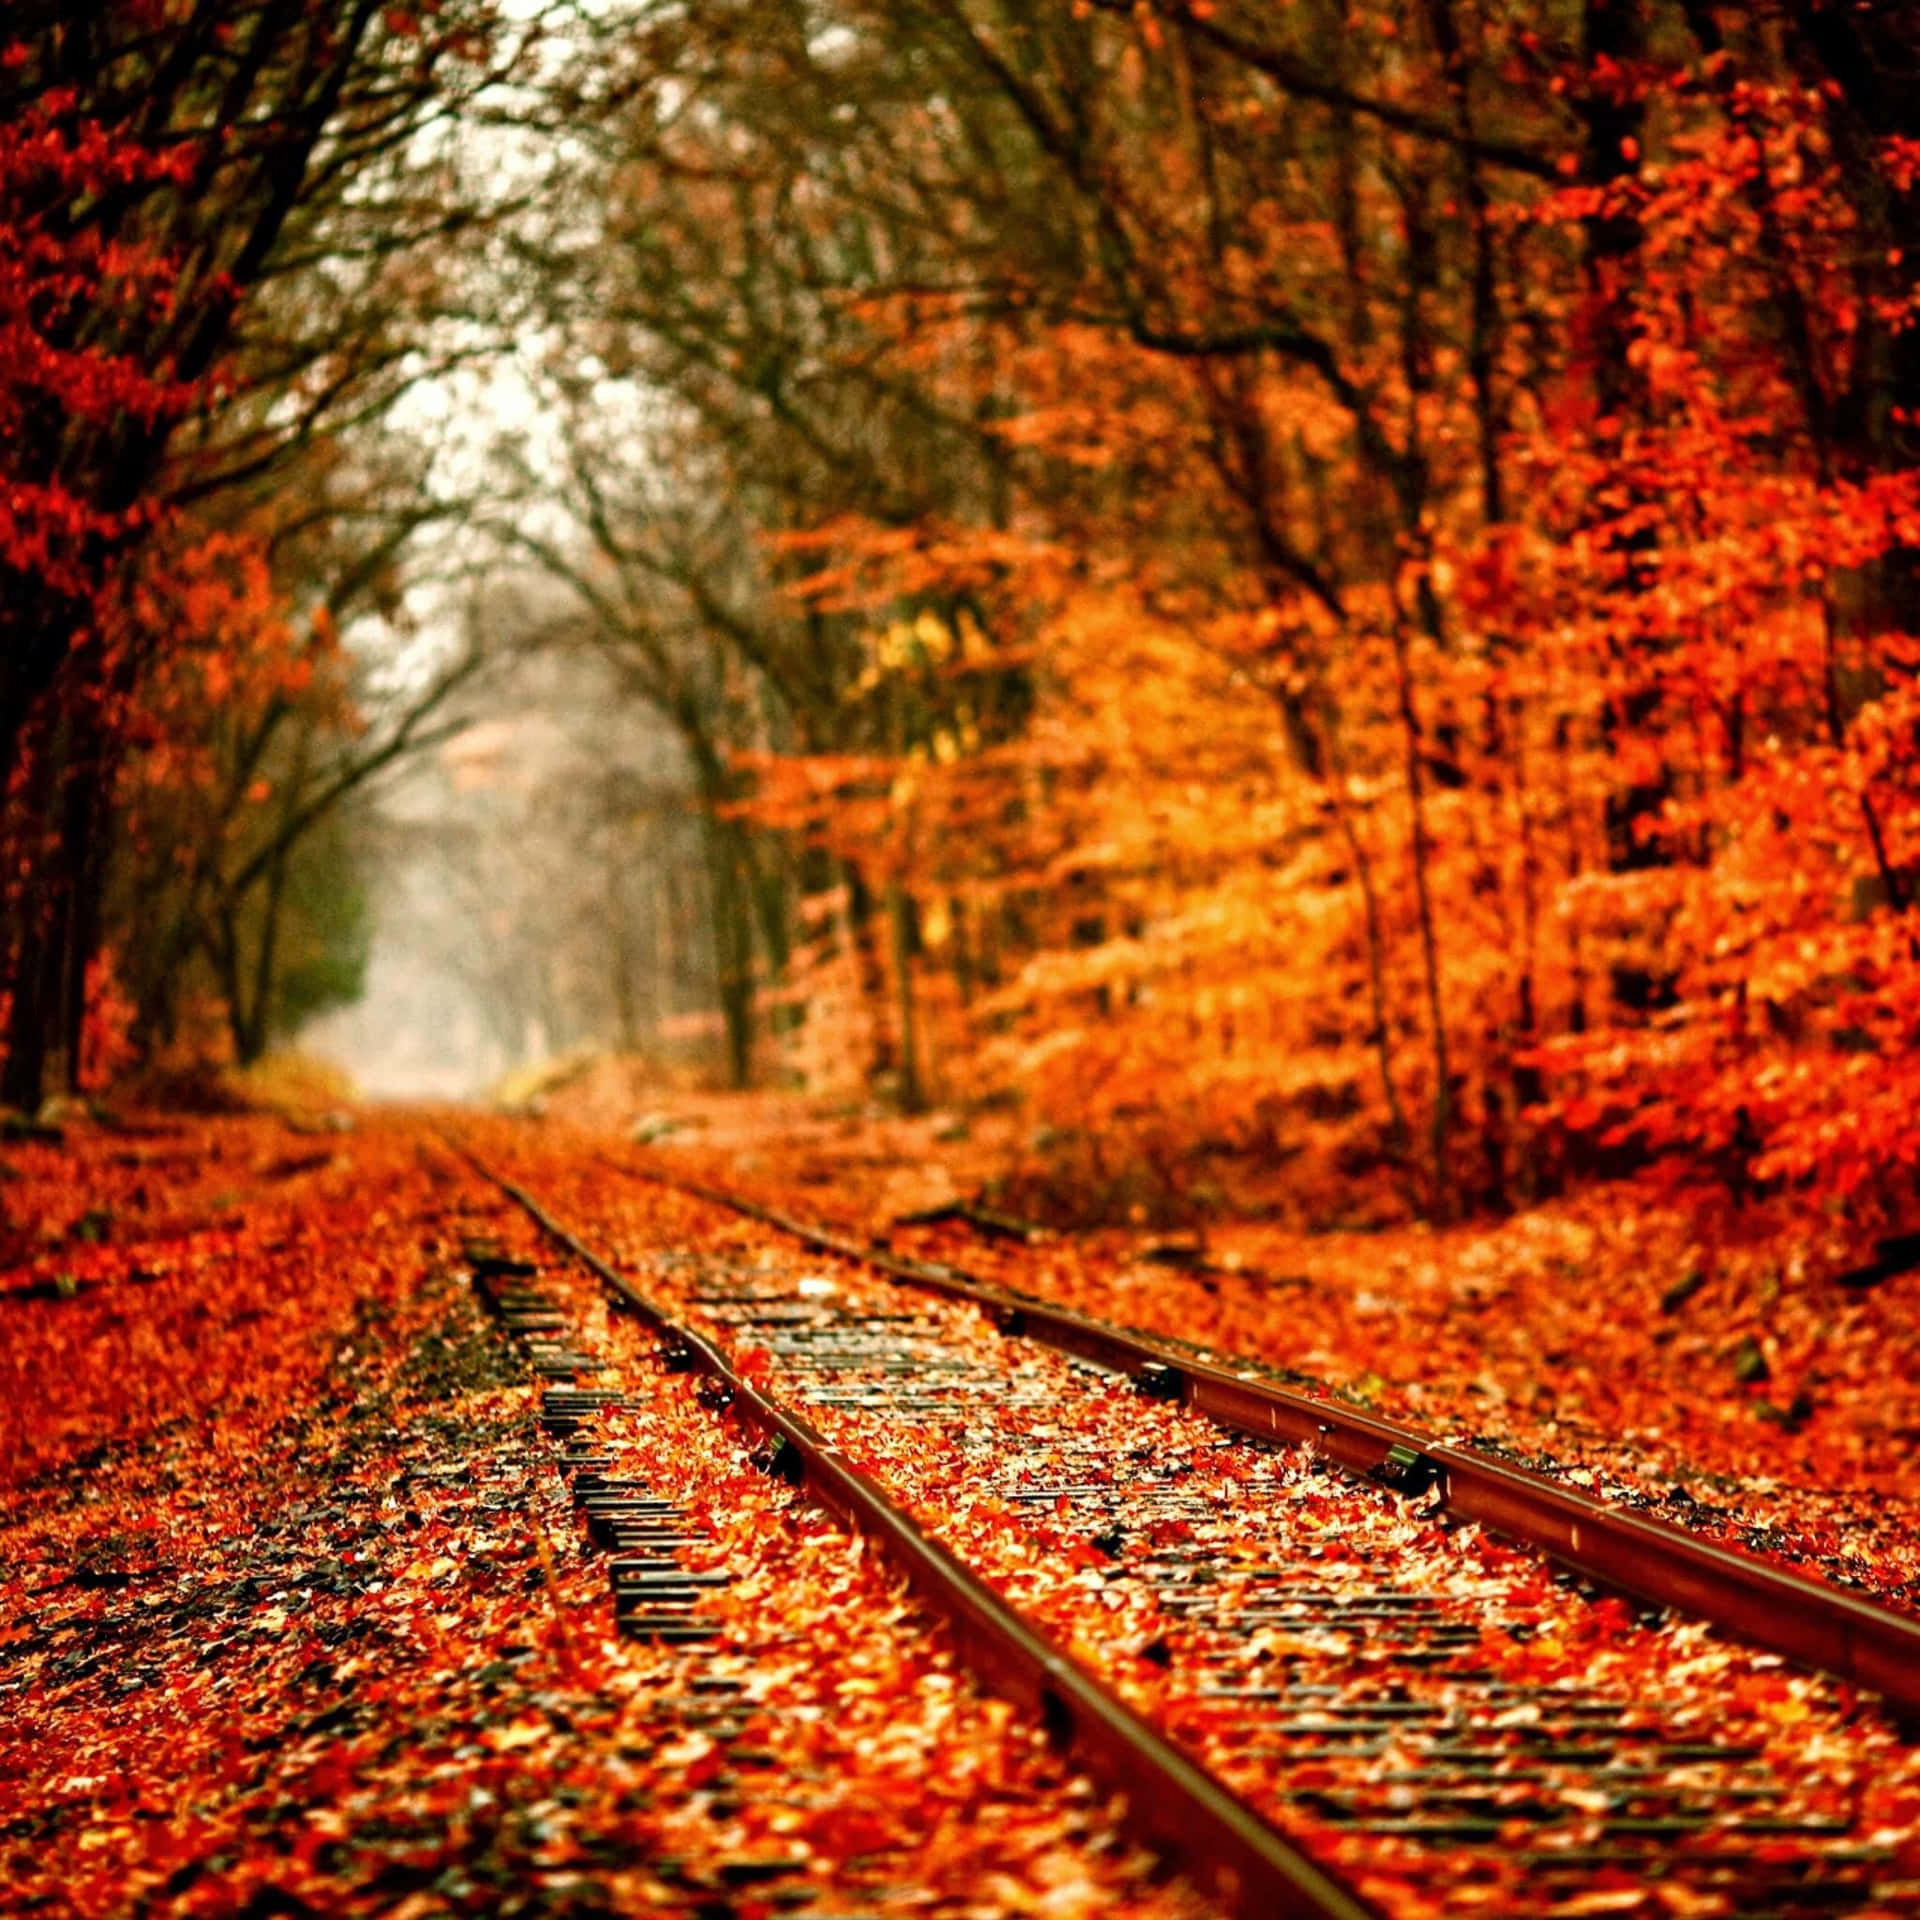 Fall Ipad Train Tracks In Forest Wallpaper